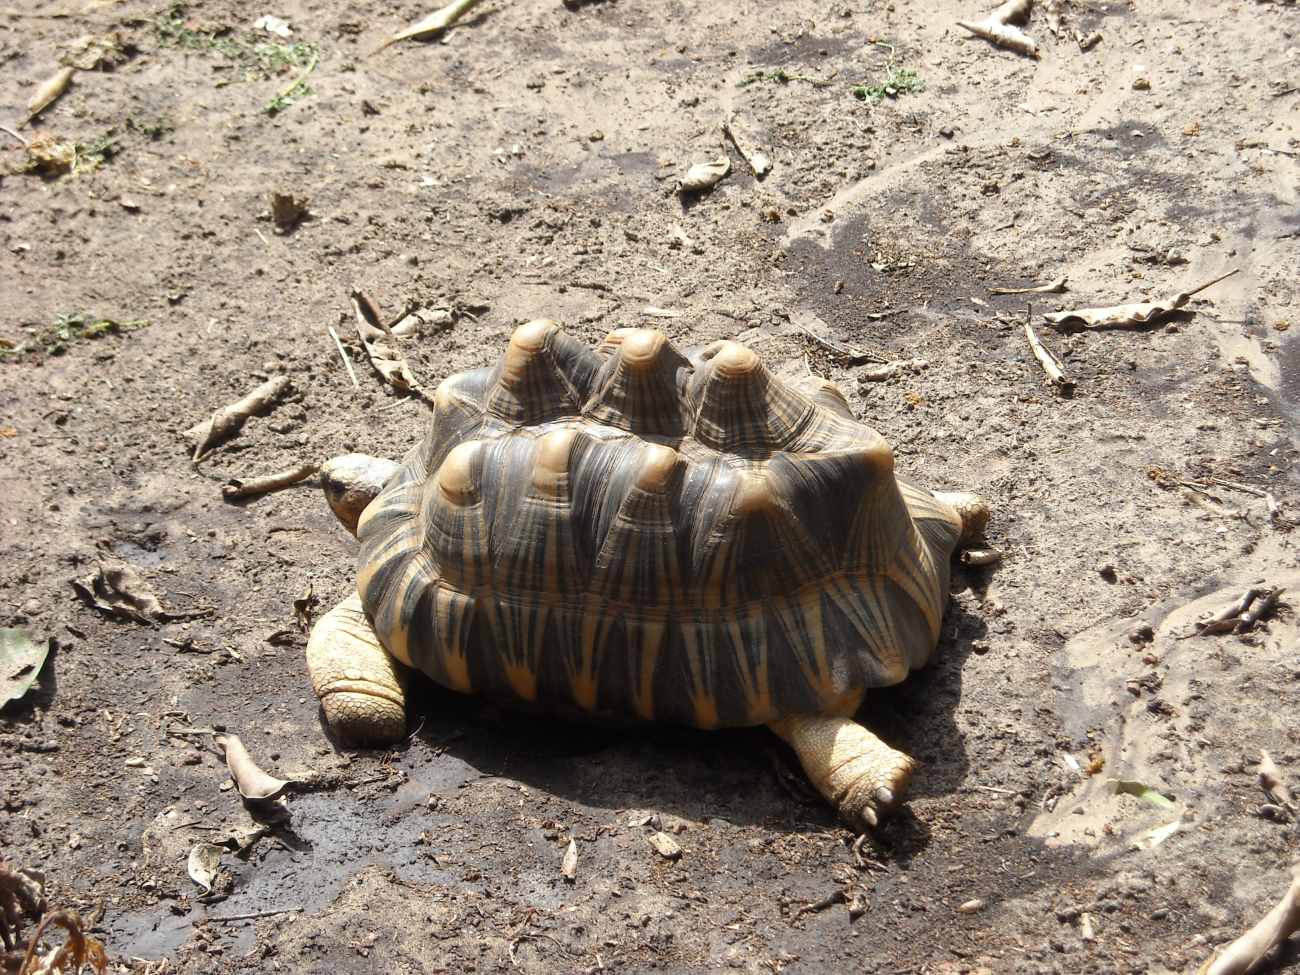 A sulcata tortoise (Geochelone sulcata) , a land-dwelling reptile nativeto Northern Africa